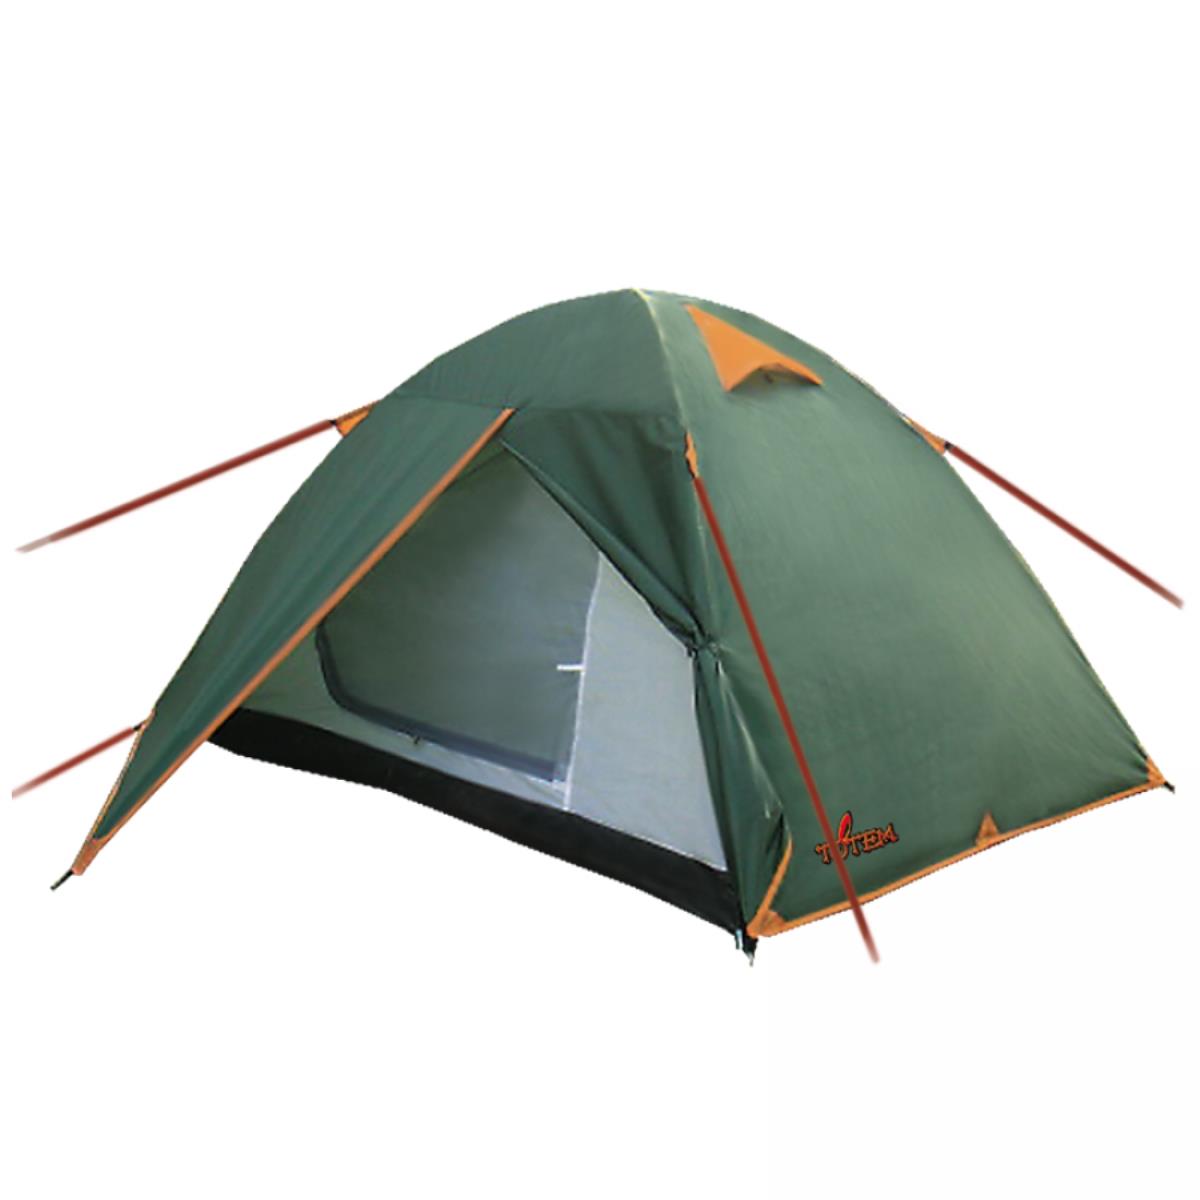 Палатка Tepee 2 V2 зеленый (TTT-020) Totem универсальная двухслойная палатка куб пентагон берег